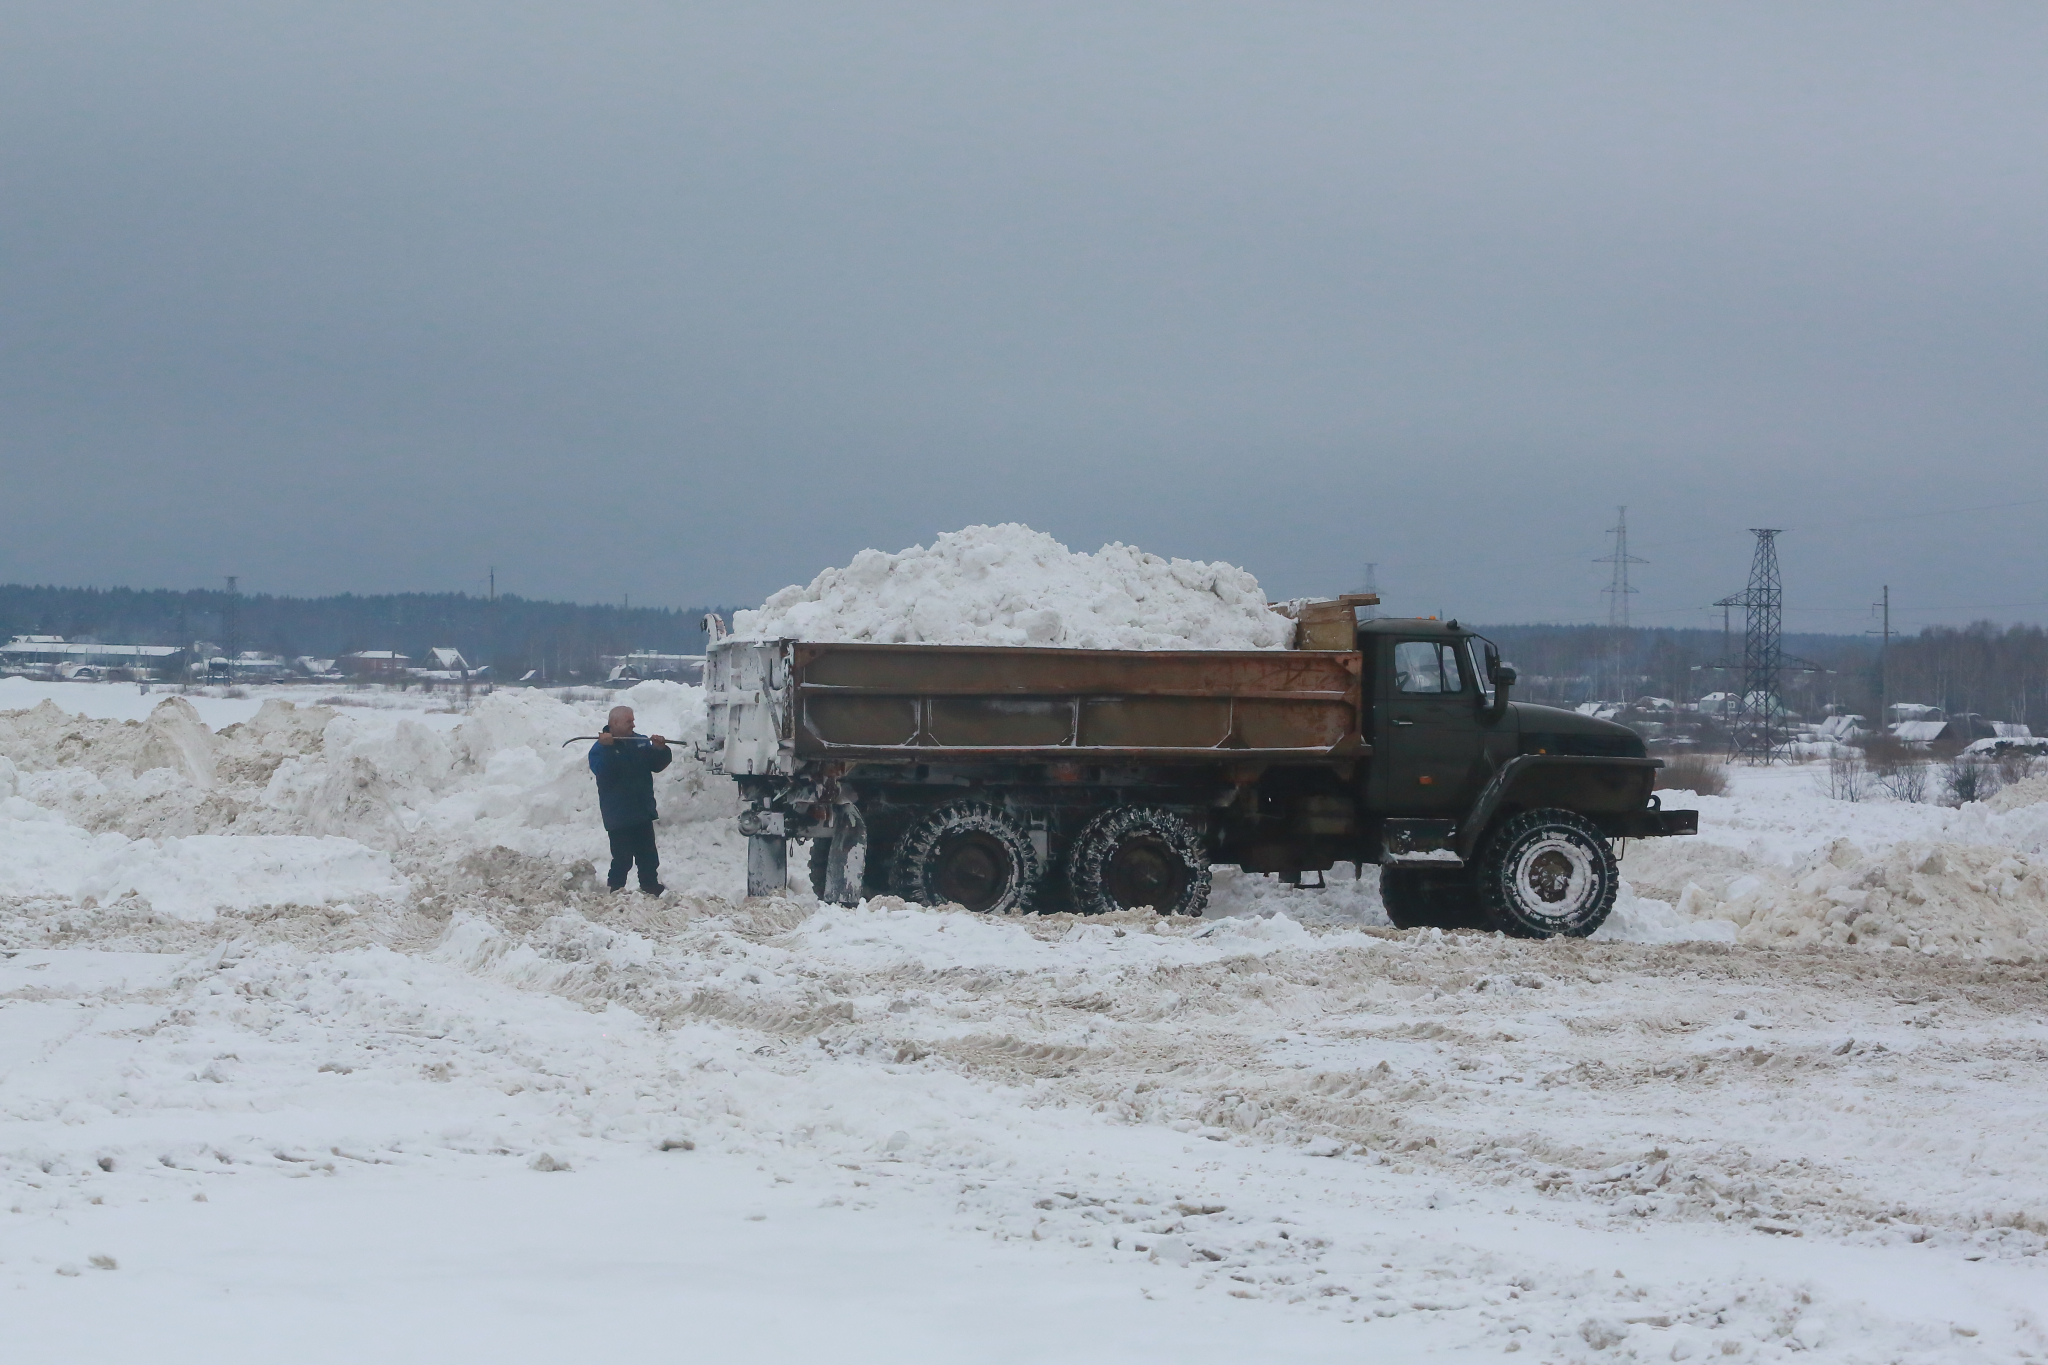 Внимание! В Йошкар-Оле «идет» очистка снега: закрыт проезд и парковка